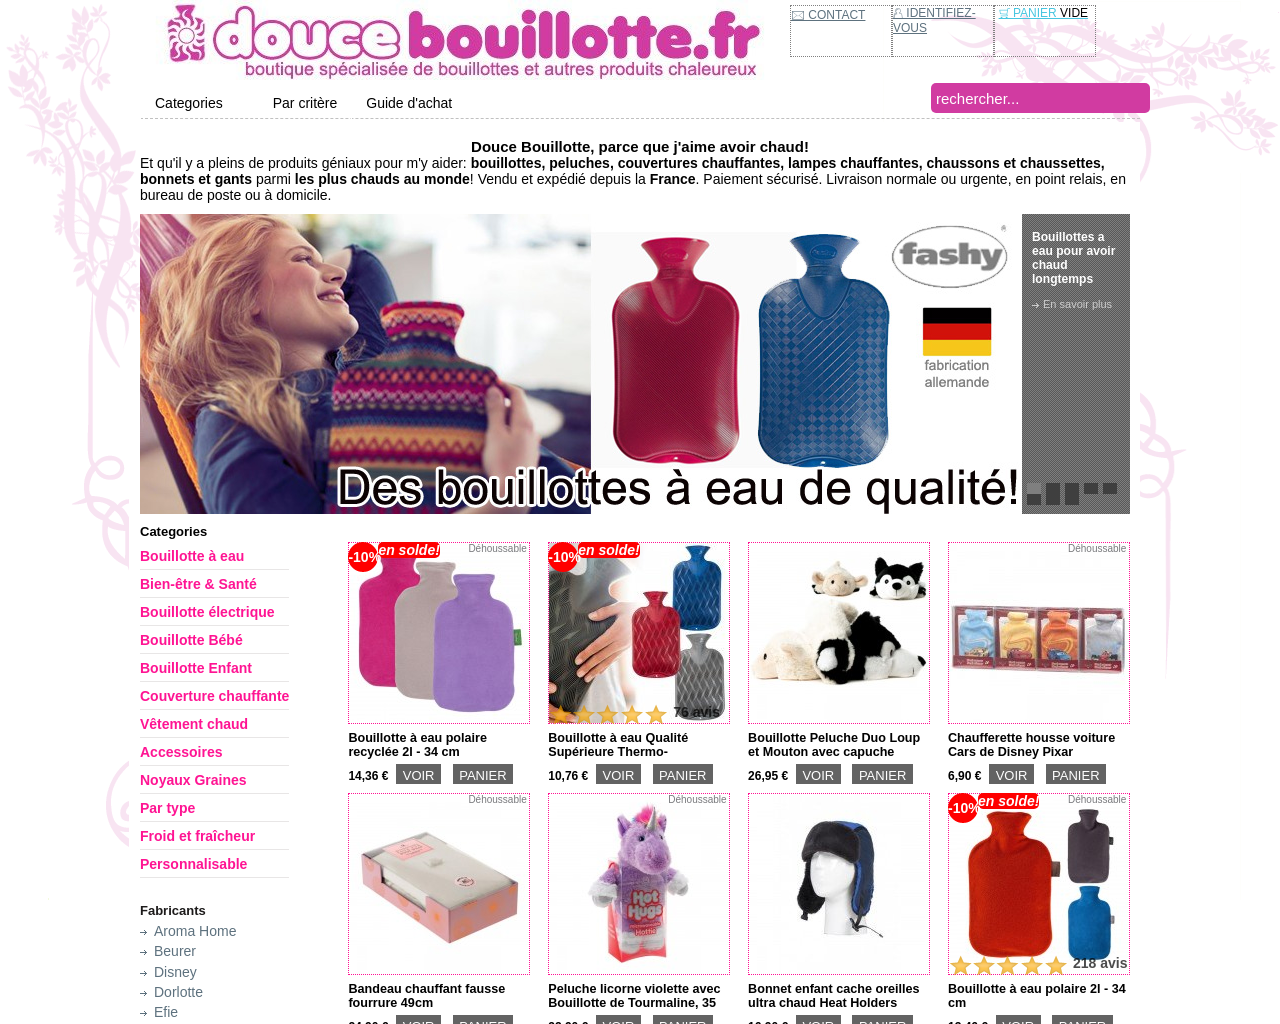 www.doucebouillotte.fr